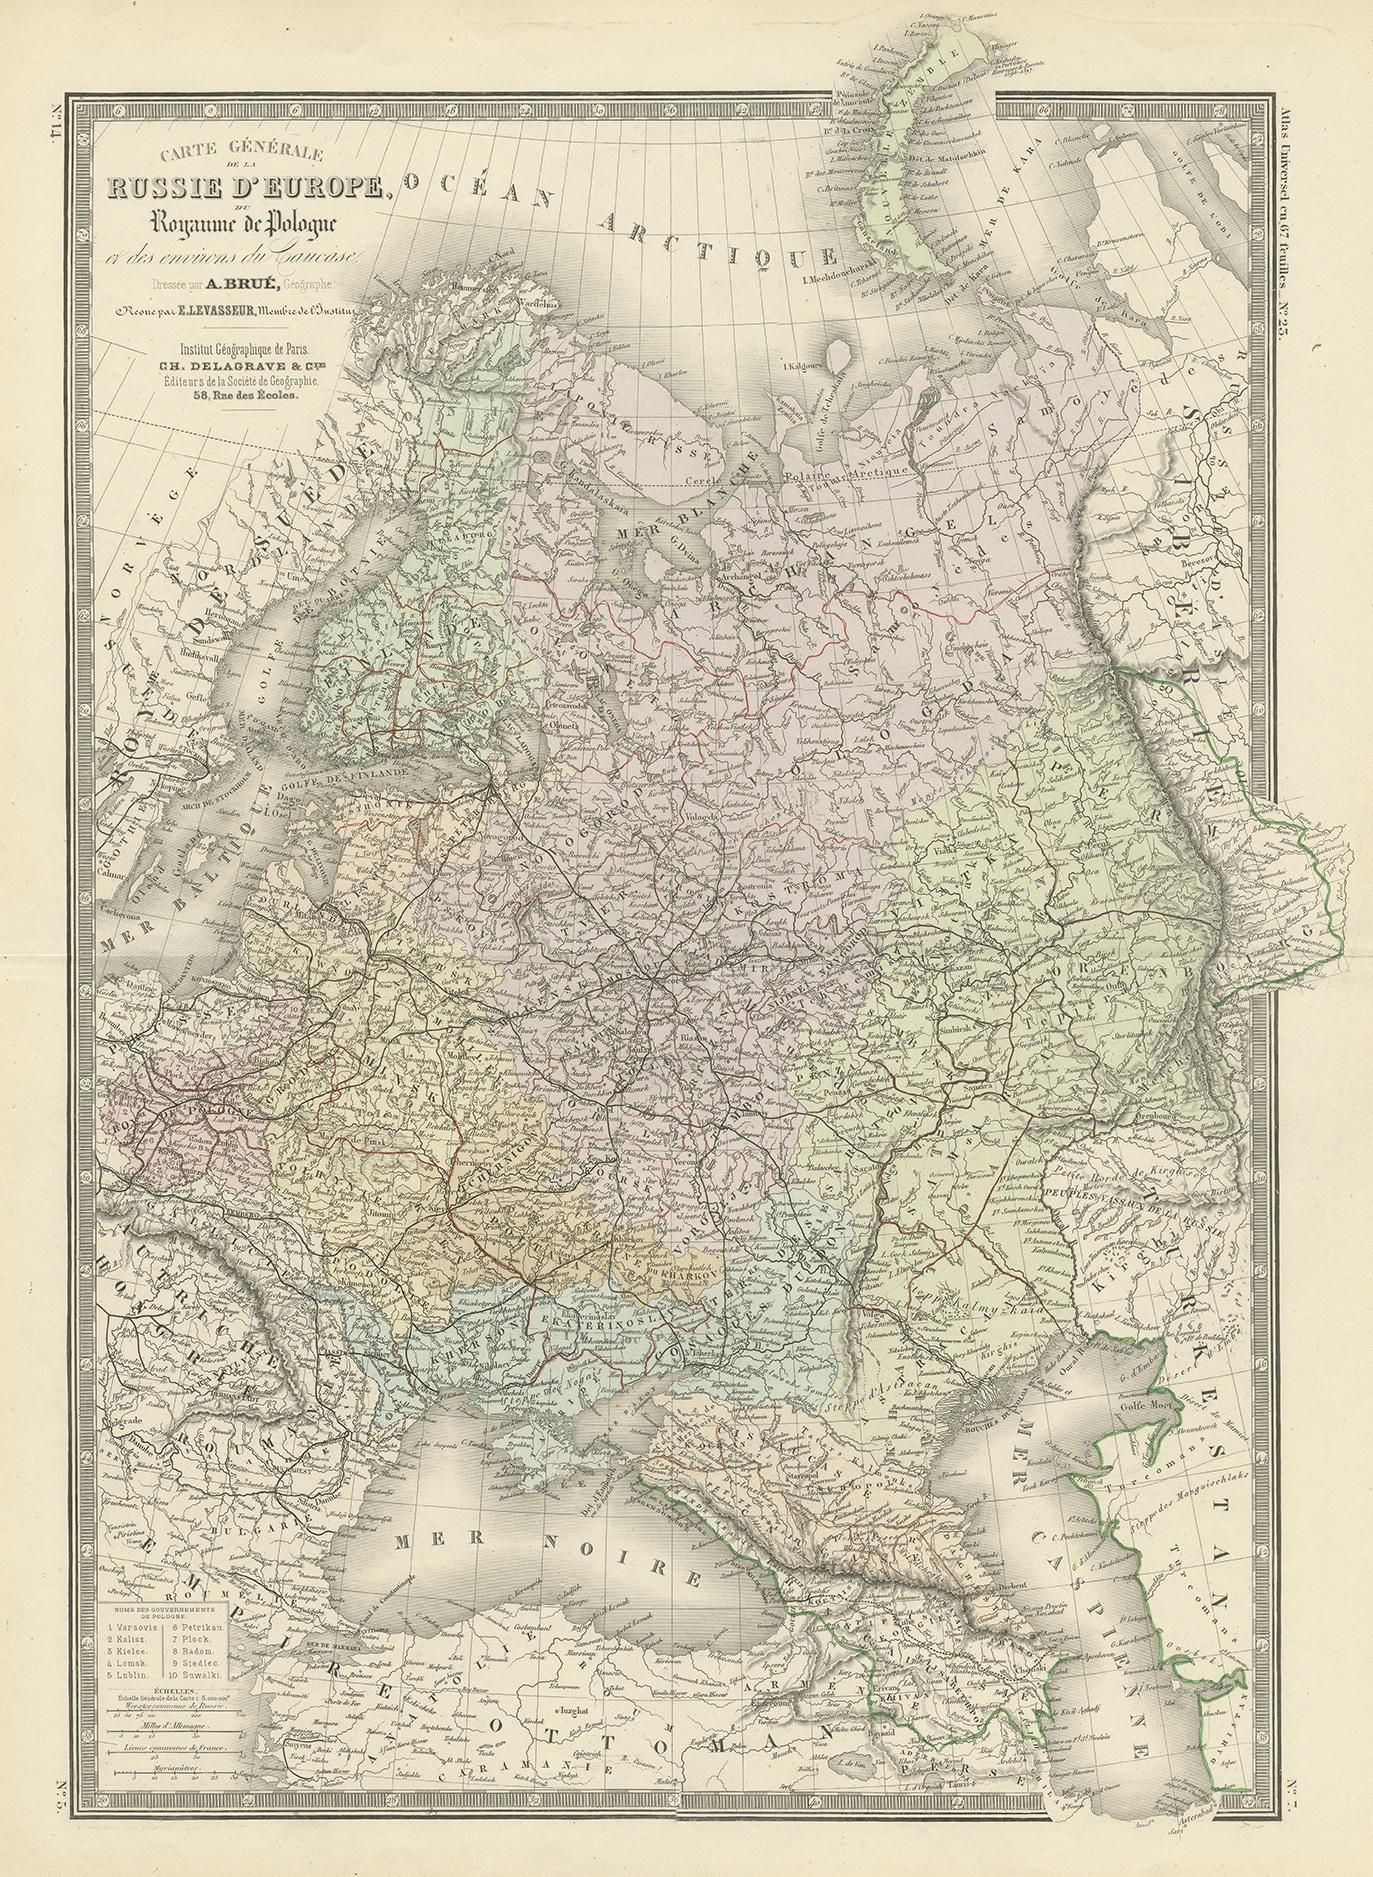 Antique map titled 'Carte générale de la Russie d'Europe (..)'. Large map of Russia in Europe. This map originates from 'Atlas de Géographie Moderne Physique et Politique' by A. Levasseur. Published 1875.